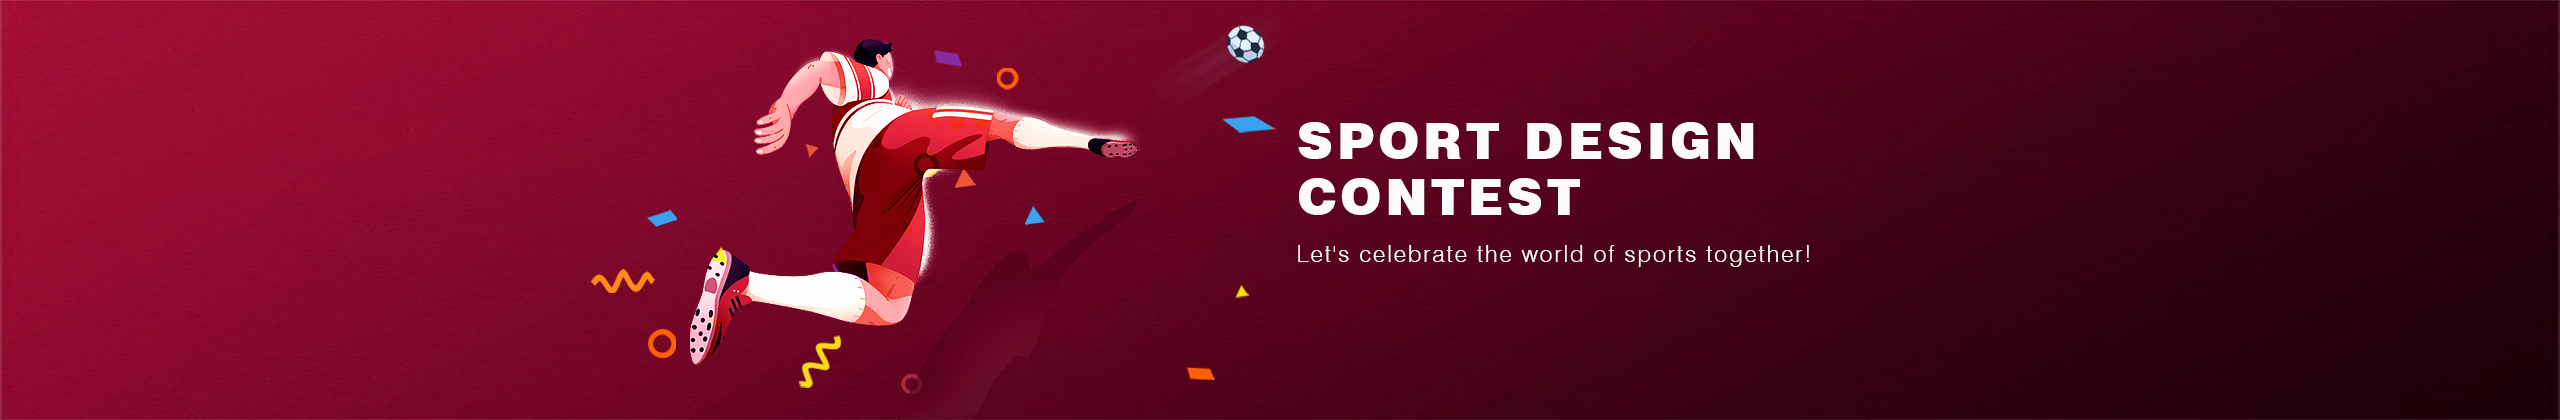 Sport Design Contest